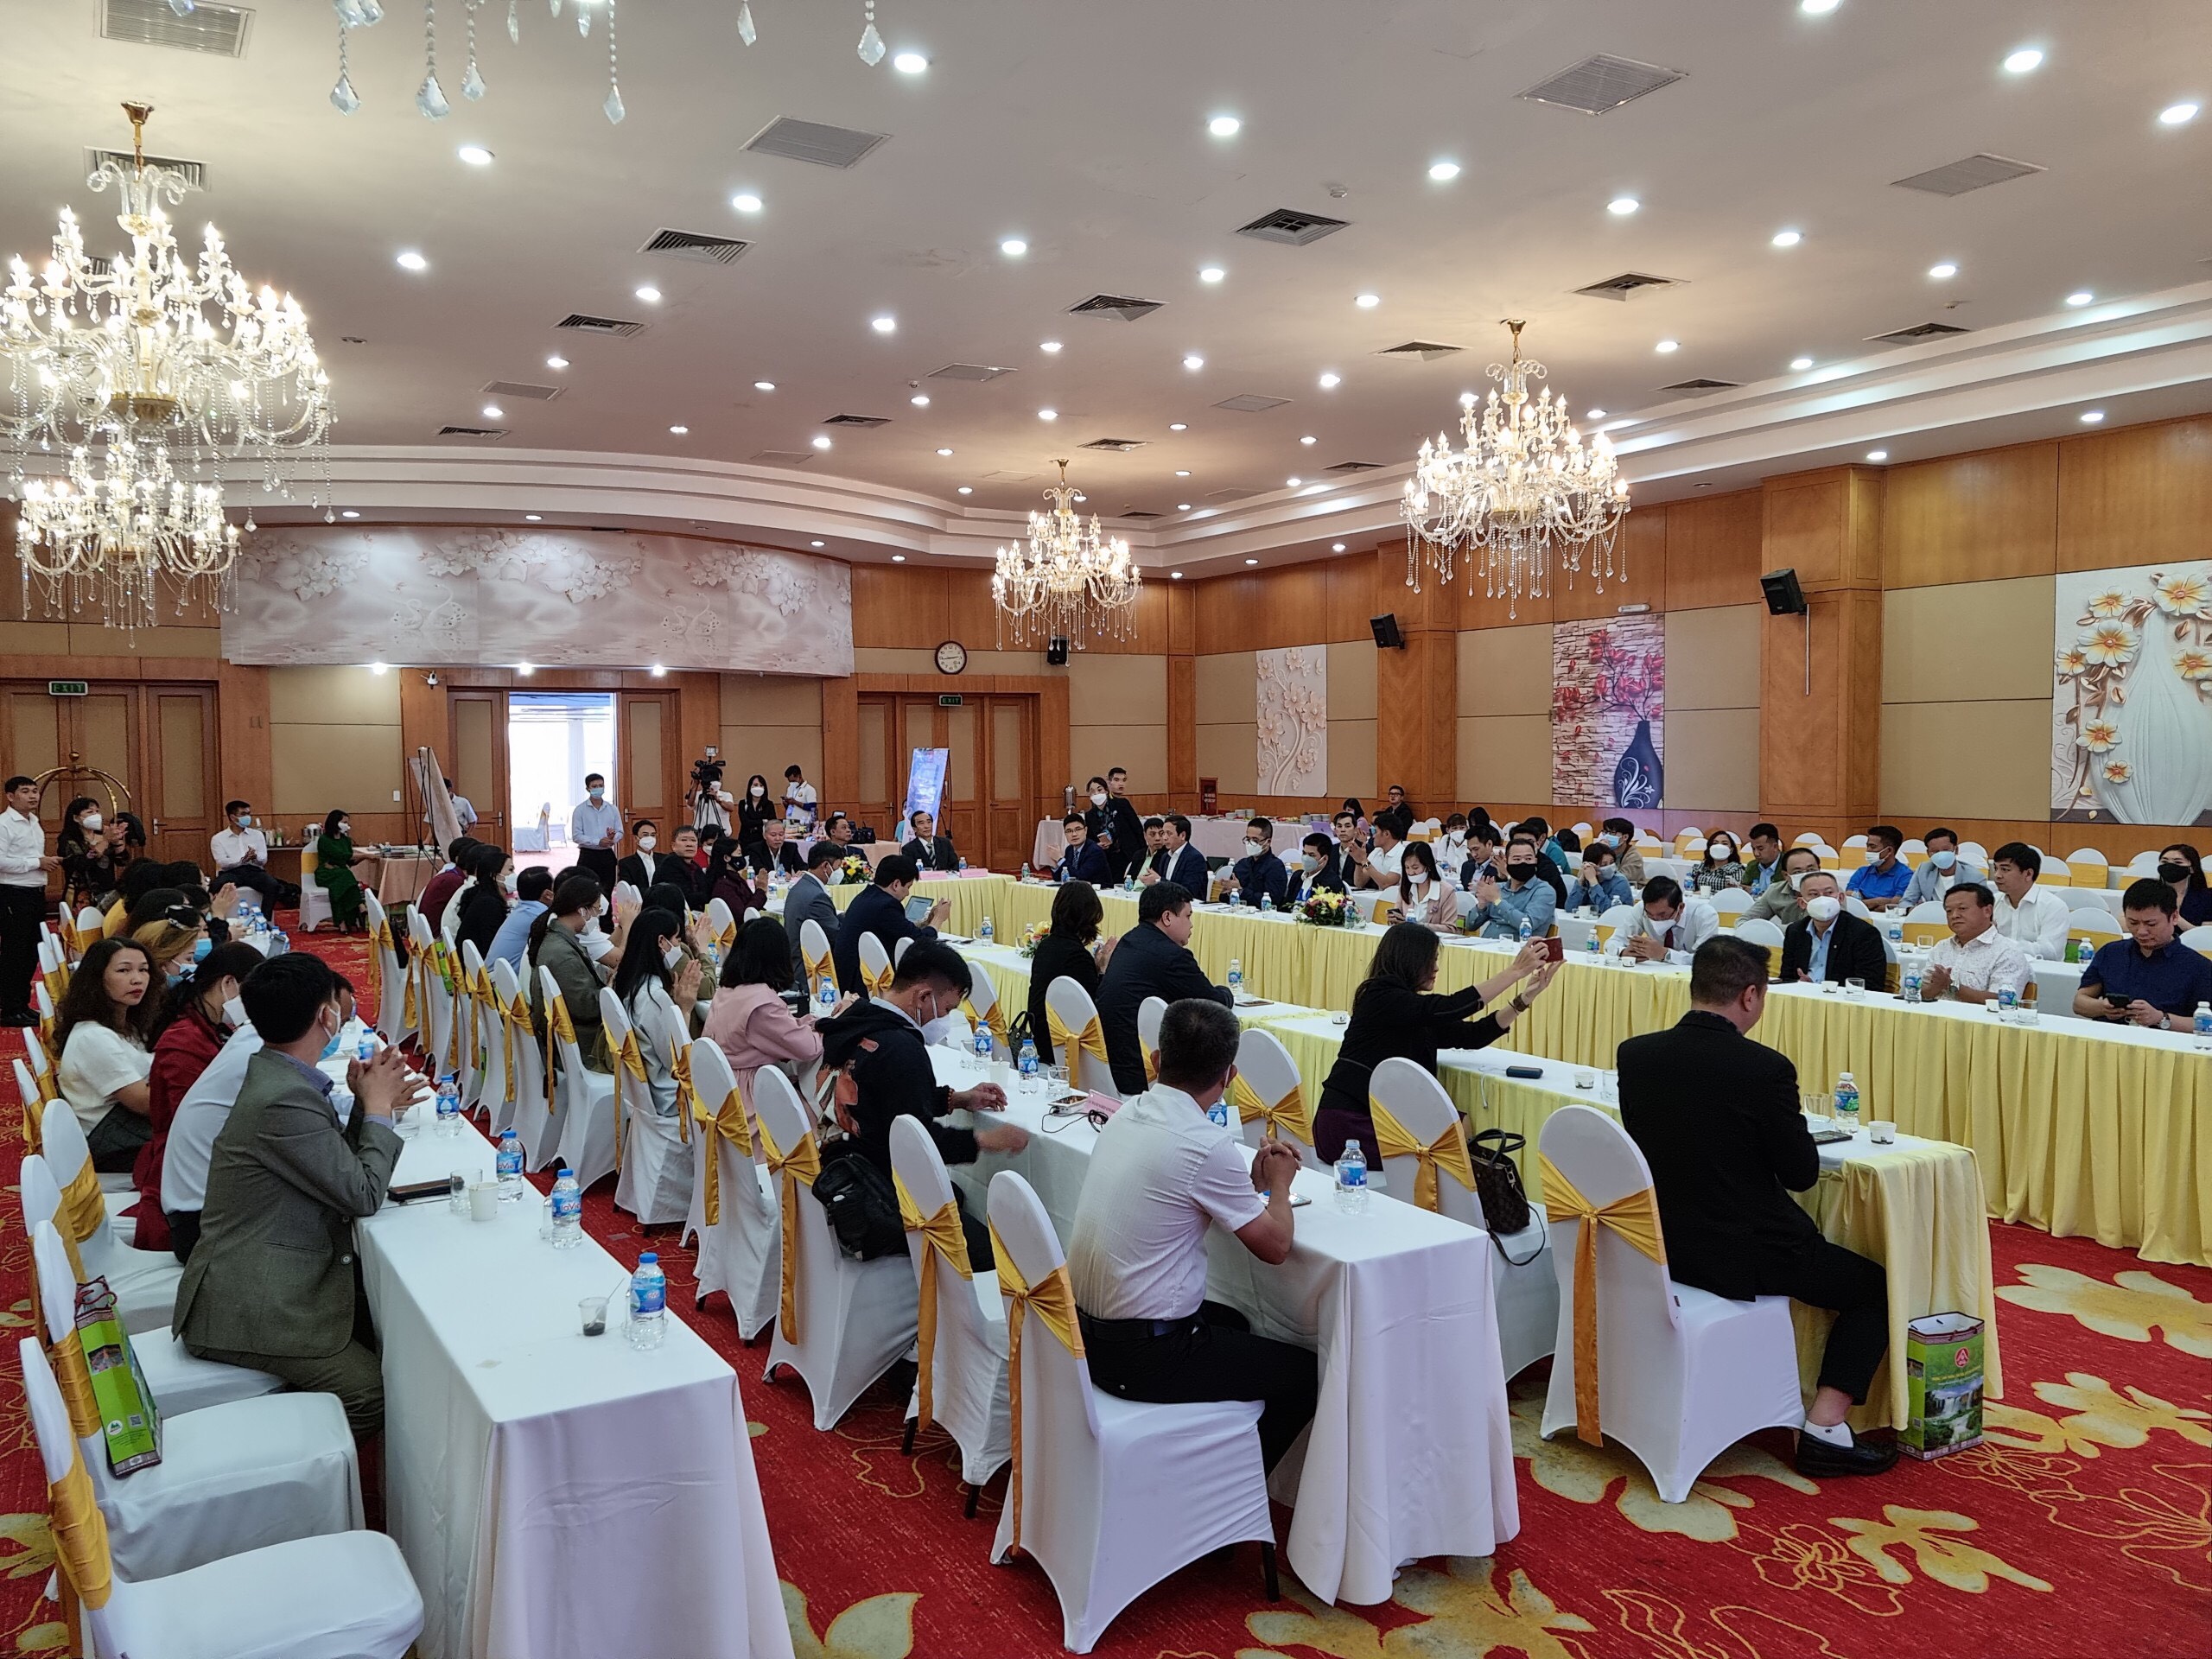 Hội nghị xúc tiến, quảng bá du lịch Đắk Lắk tại Hà Nội nhằm giới thiệu các sản phẩm, dịch vụ du lịch tỉnh Đắk Lắk đến thị trường khách tại TP. Hà Nội và các địa phương trong cả nước.